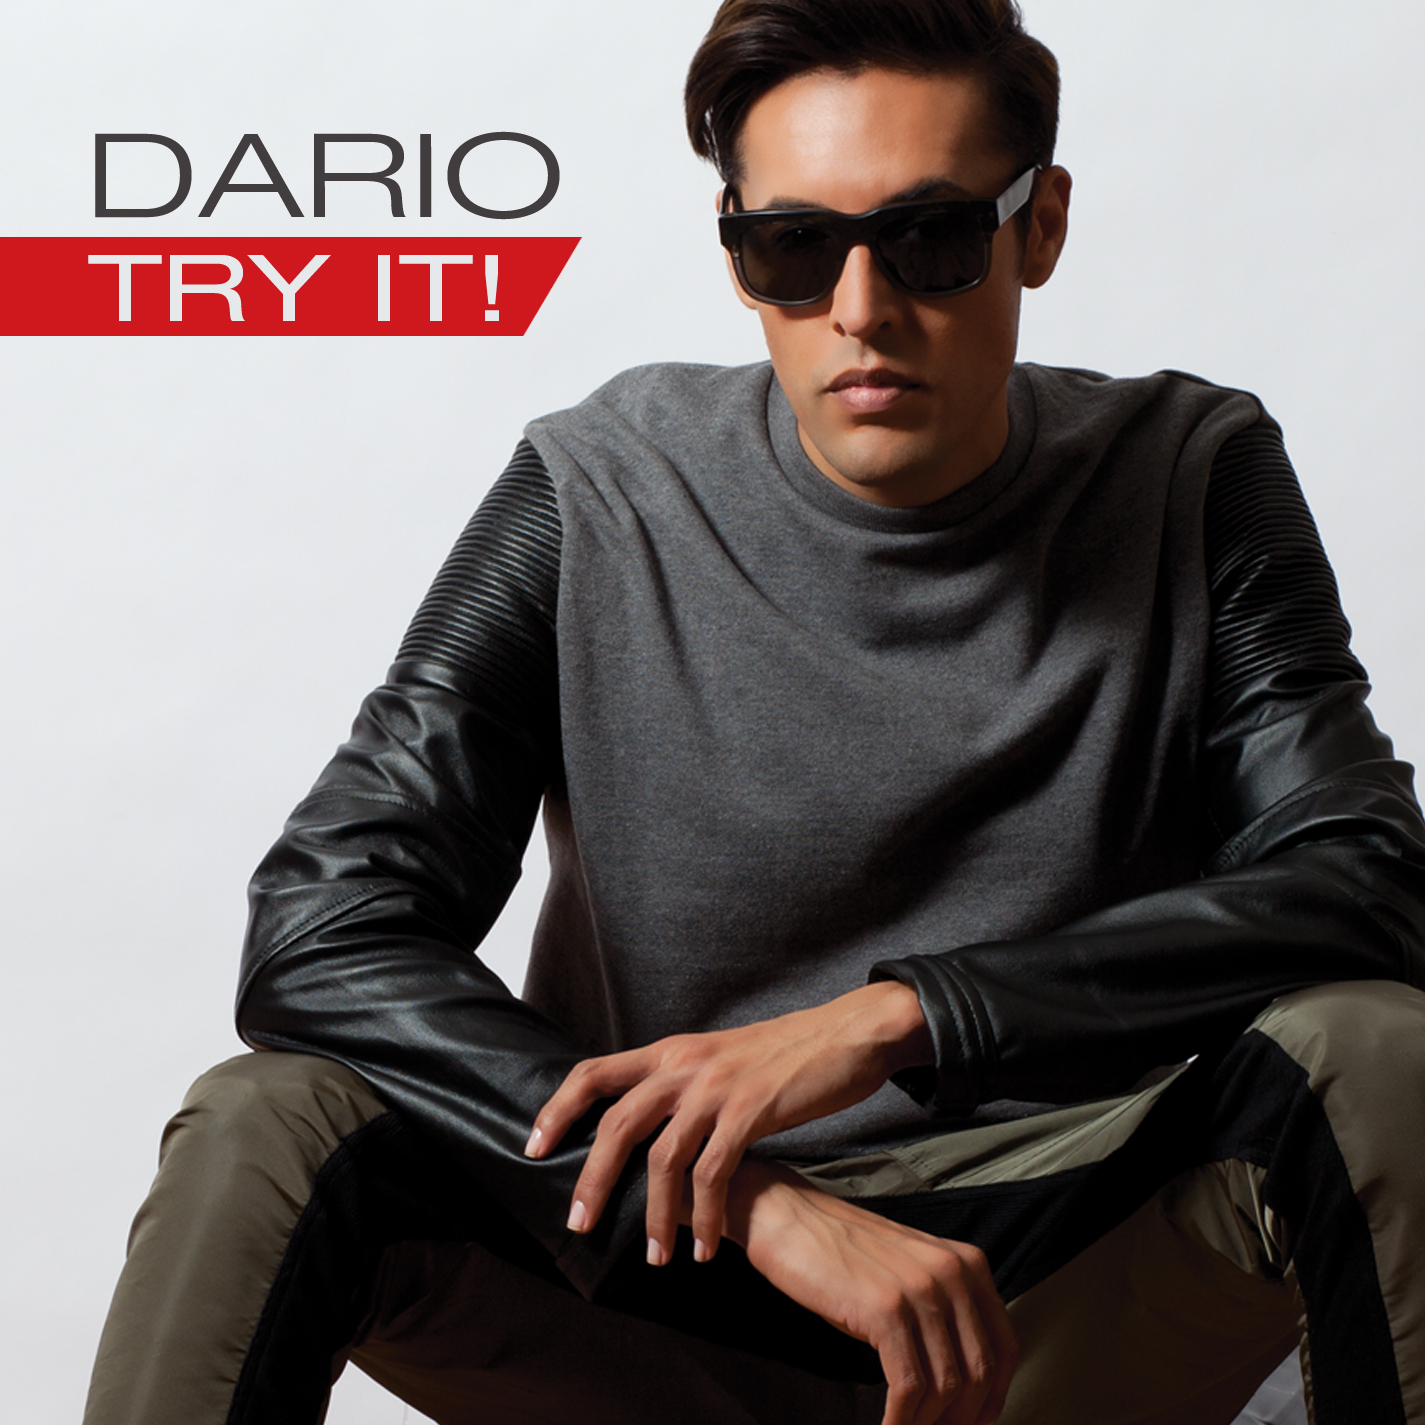 Dario's new single, Try It!